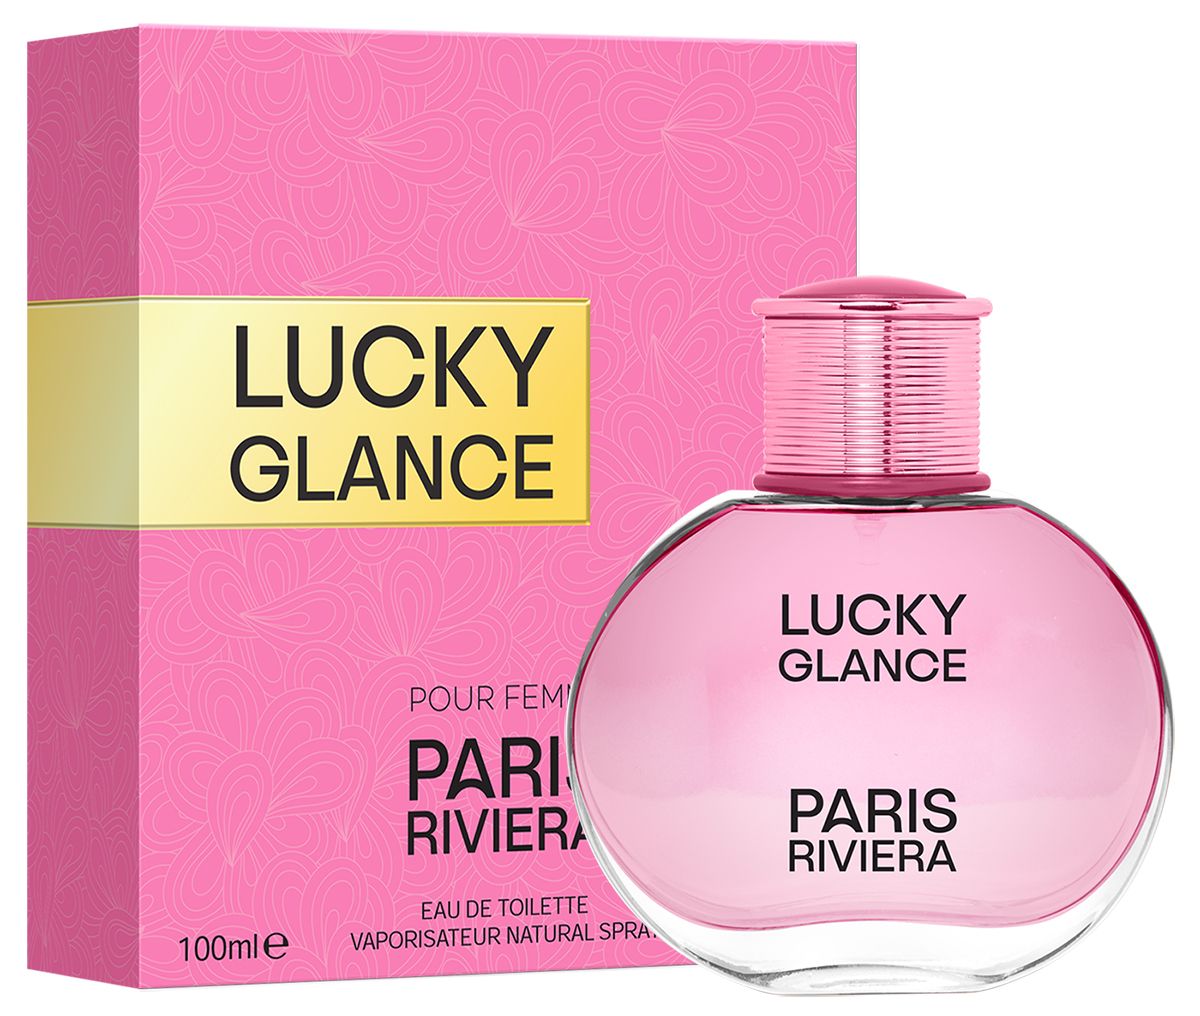 Les Eaux De Chanel Paris-Riviera - Perfume News